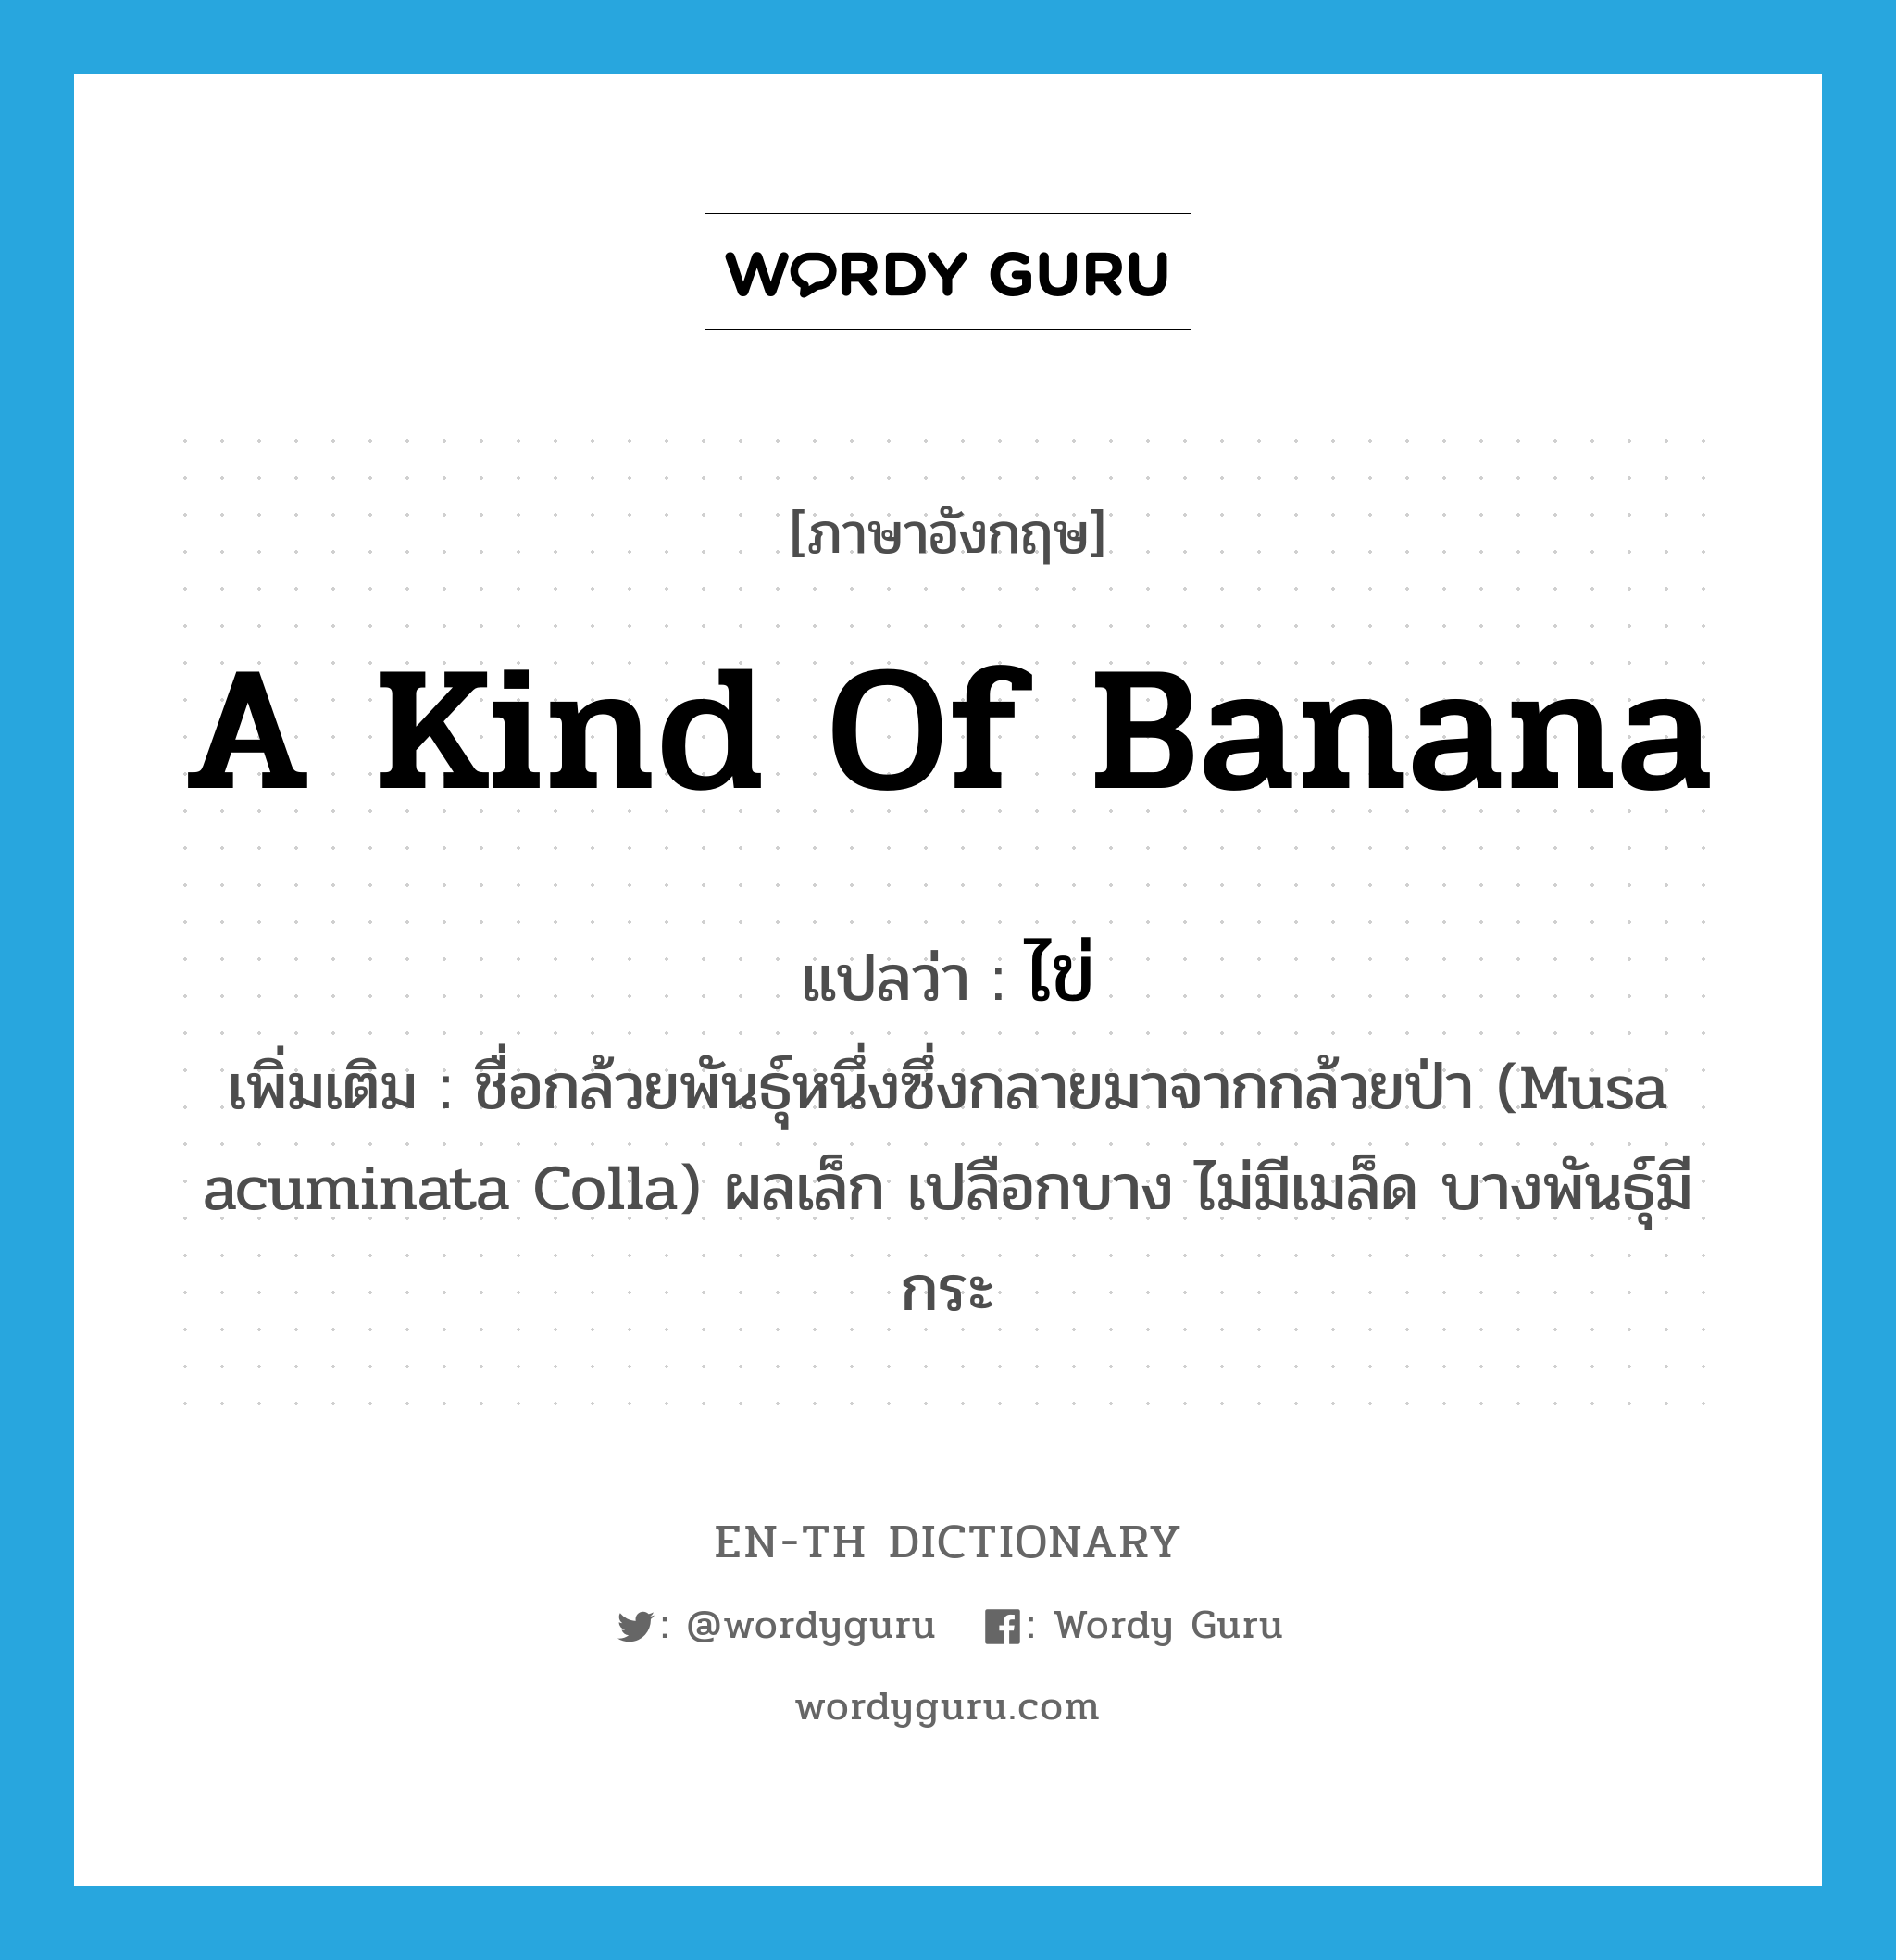 ไข่ ภาษาอังกฤษ?, คำศัพท์ภาษาอังกฤษ ไข่ แปลว่า a kind of banana ประเภท N เพิ่มเติม ชื่อกล้วยพันธุ์หนึ่งซึ่งกลายมาจากกล้วยป่า (Musa acuminata Colla) ผลเล็ก เปลือกบาง ไม่มีเมล็ด บางพันธุ์มีกระ หมวด N